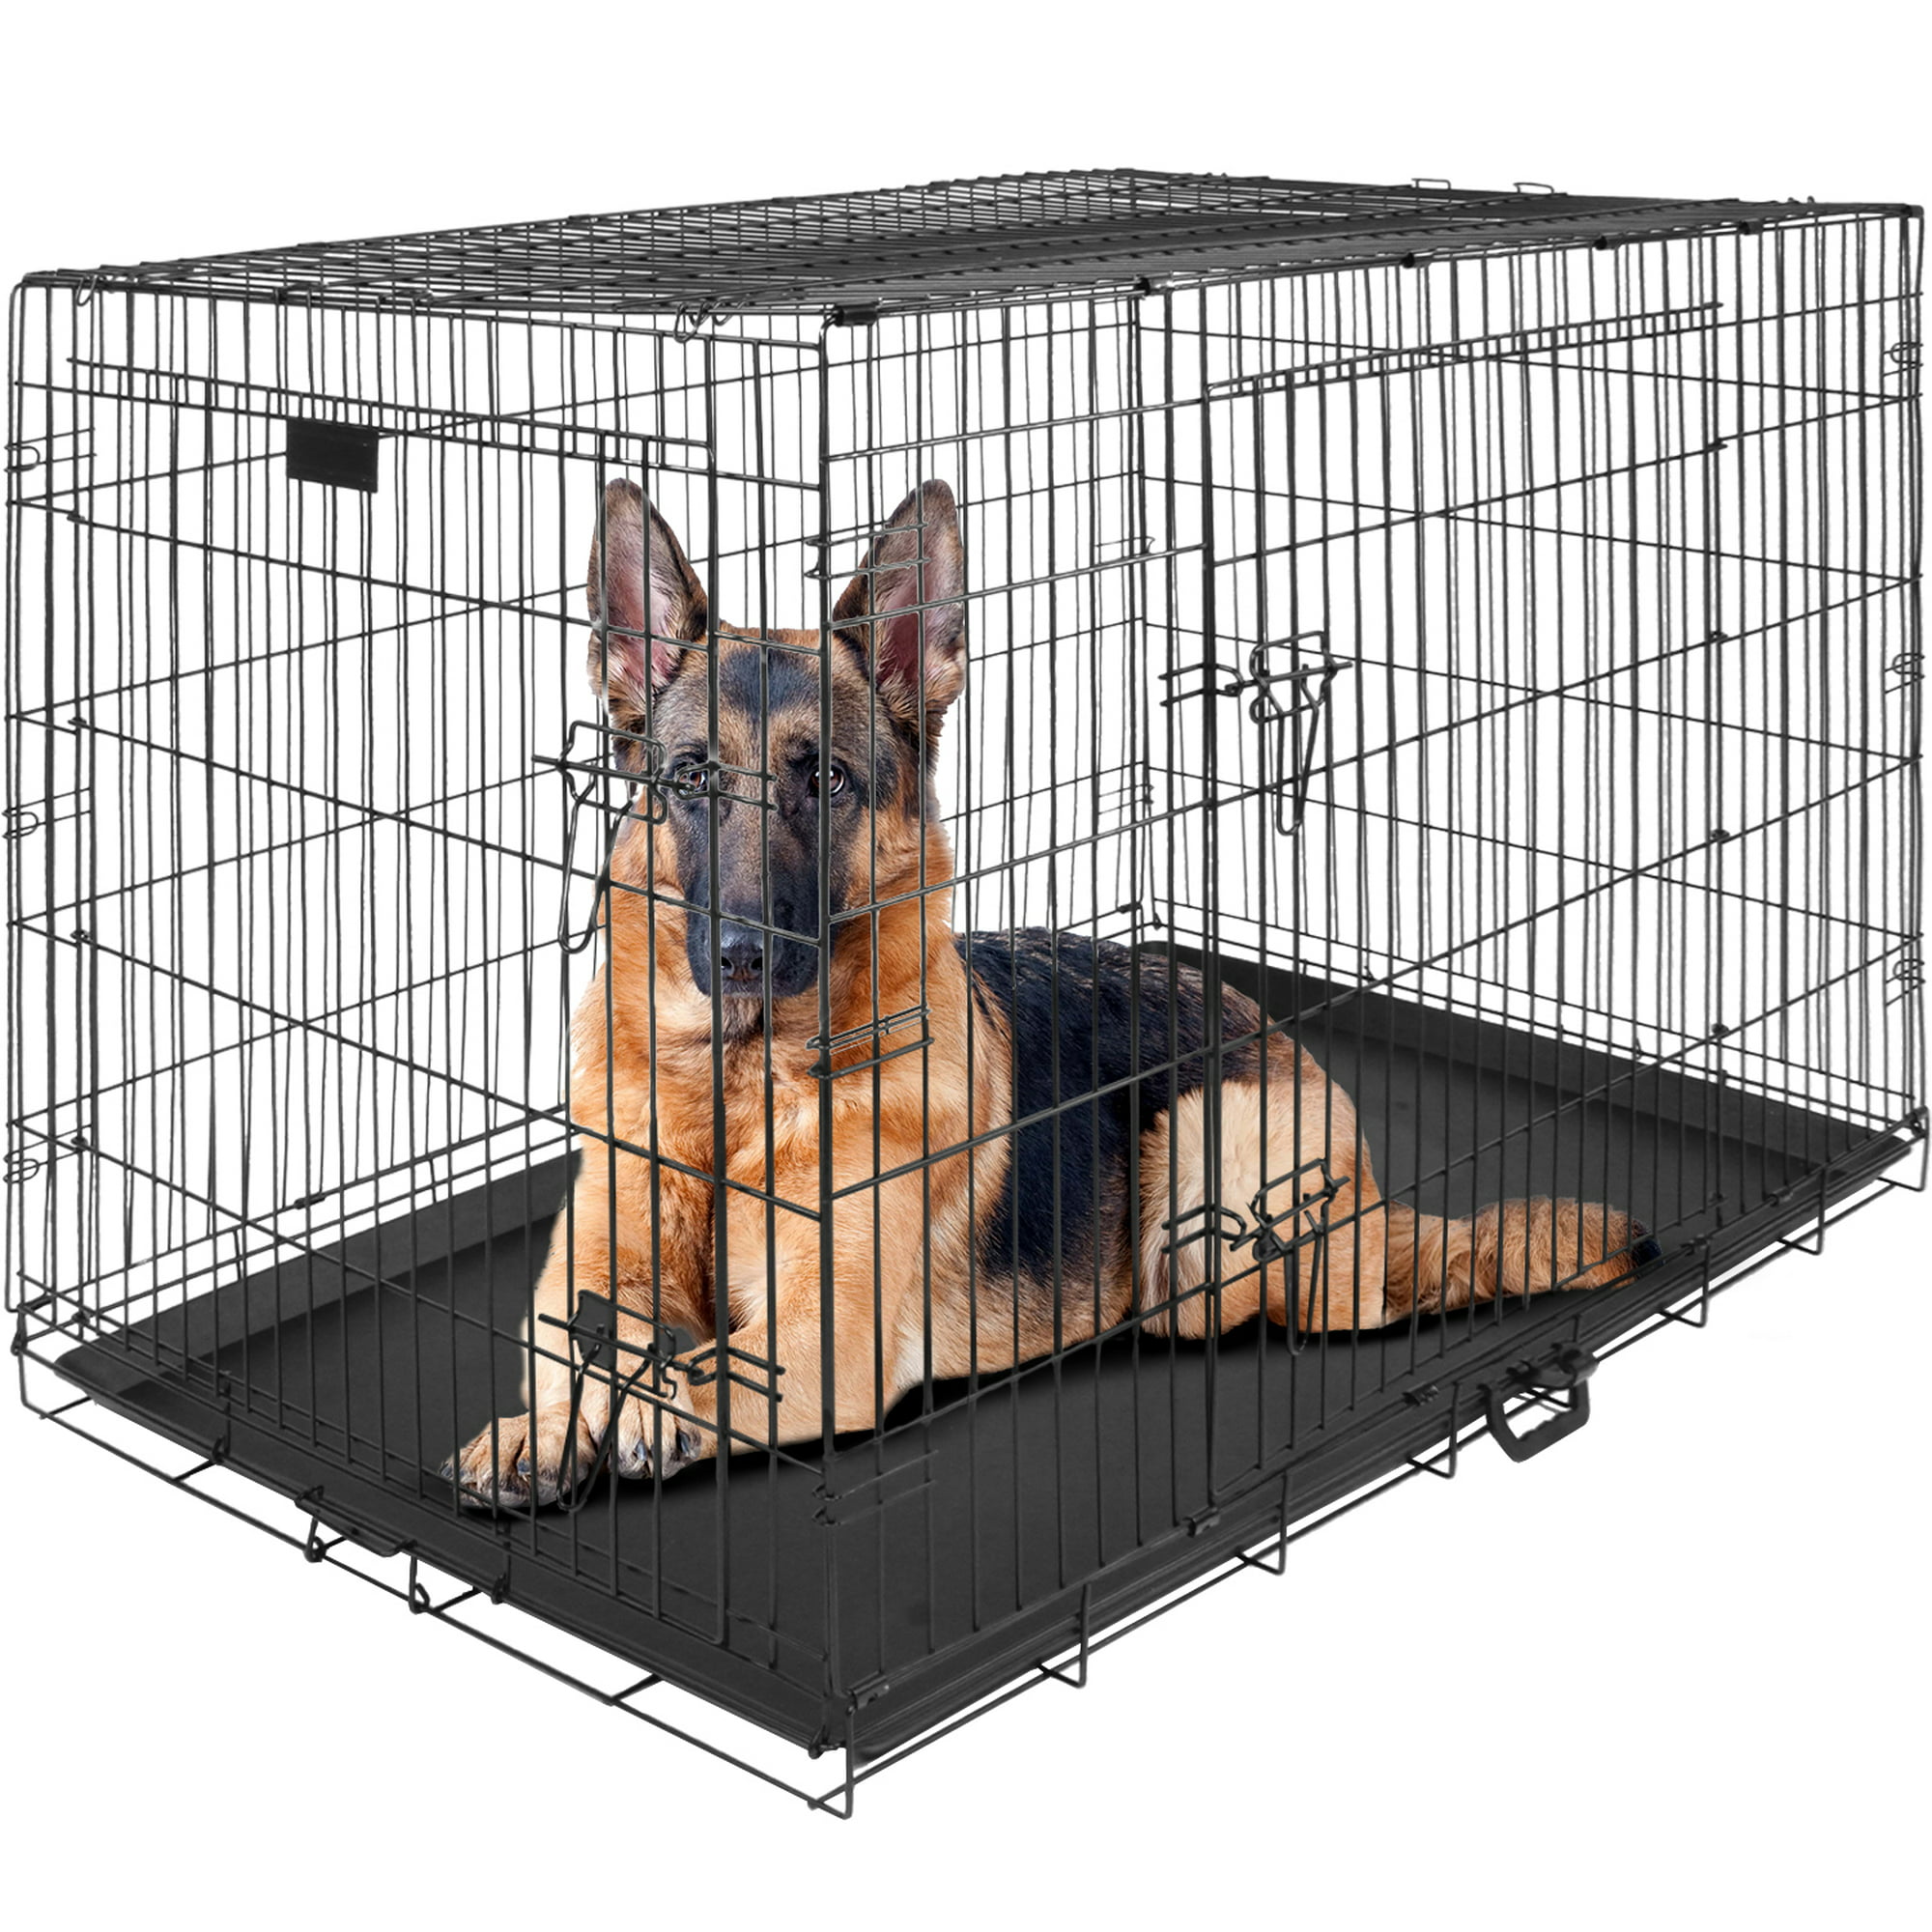 Entrenar a tu perro con una jaula